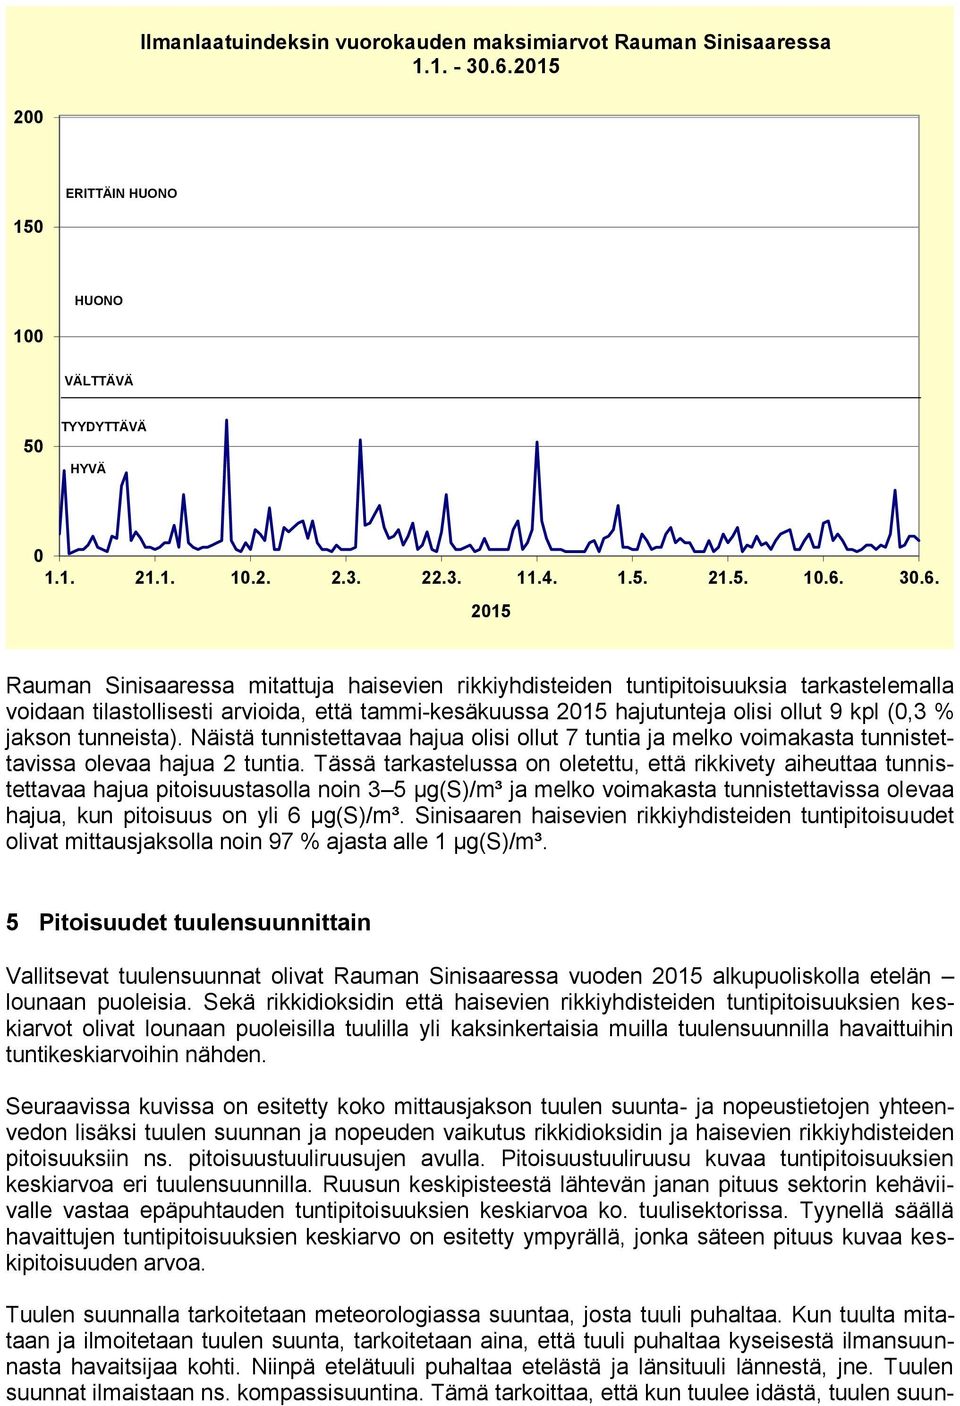 3.6. Rauman Sinisaaressa mitattuja haisevien rikkiyhdisteiden tuntipitoisuuksia tarkastelemalla voidaan tilastollisesti arvioida, että tammi-kesäkuussa hajutunteja olisi ollut 9 kpl (,3 % jakson